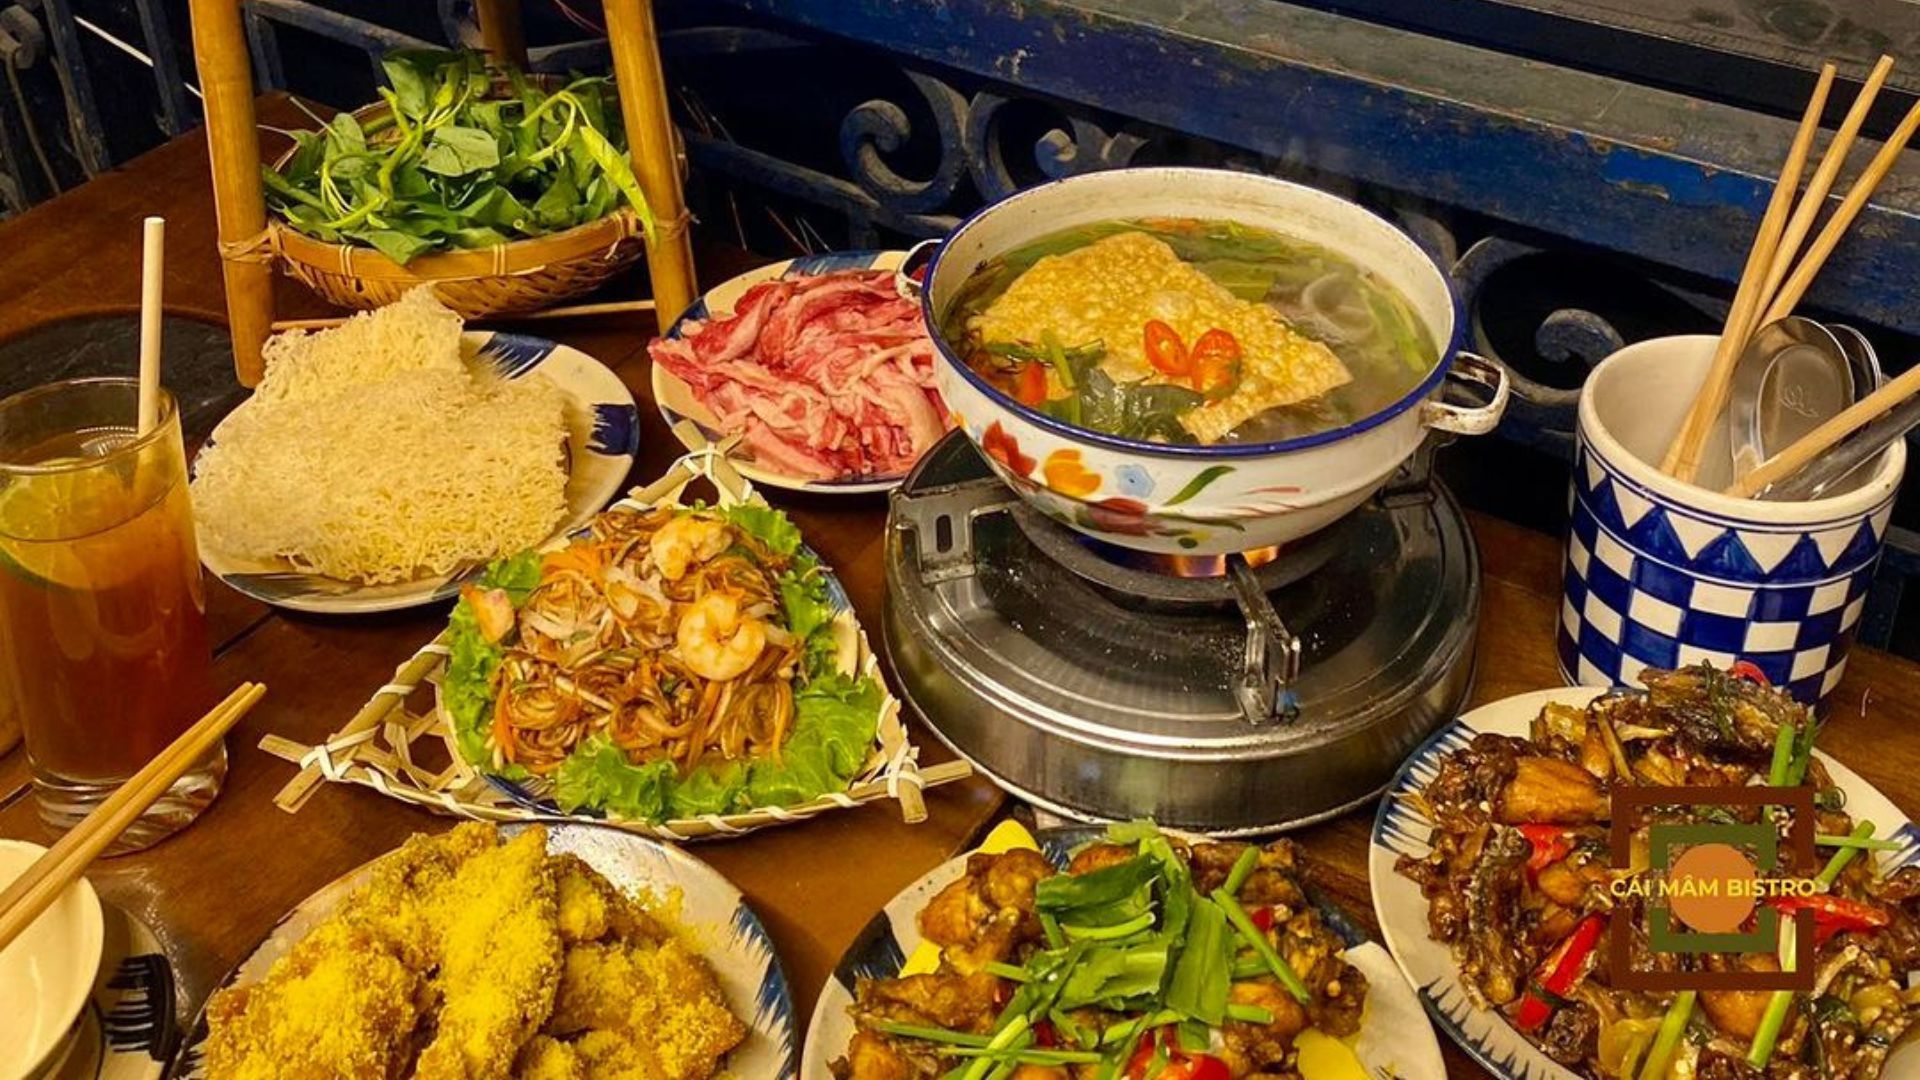 Cai Mam - vegetarian food in Vietnam